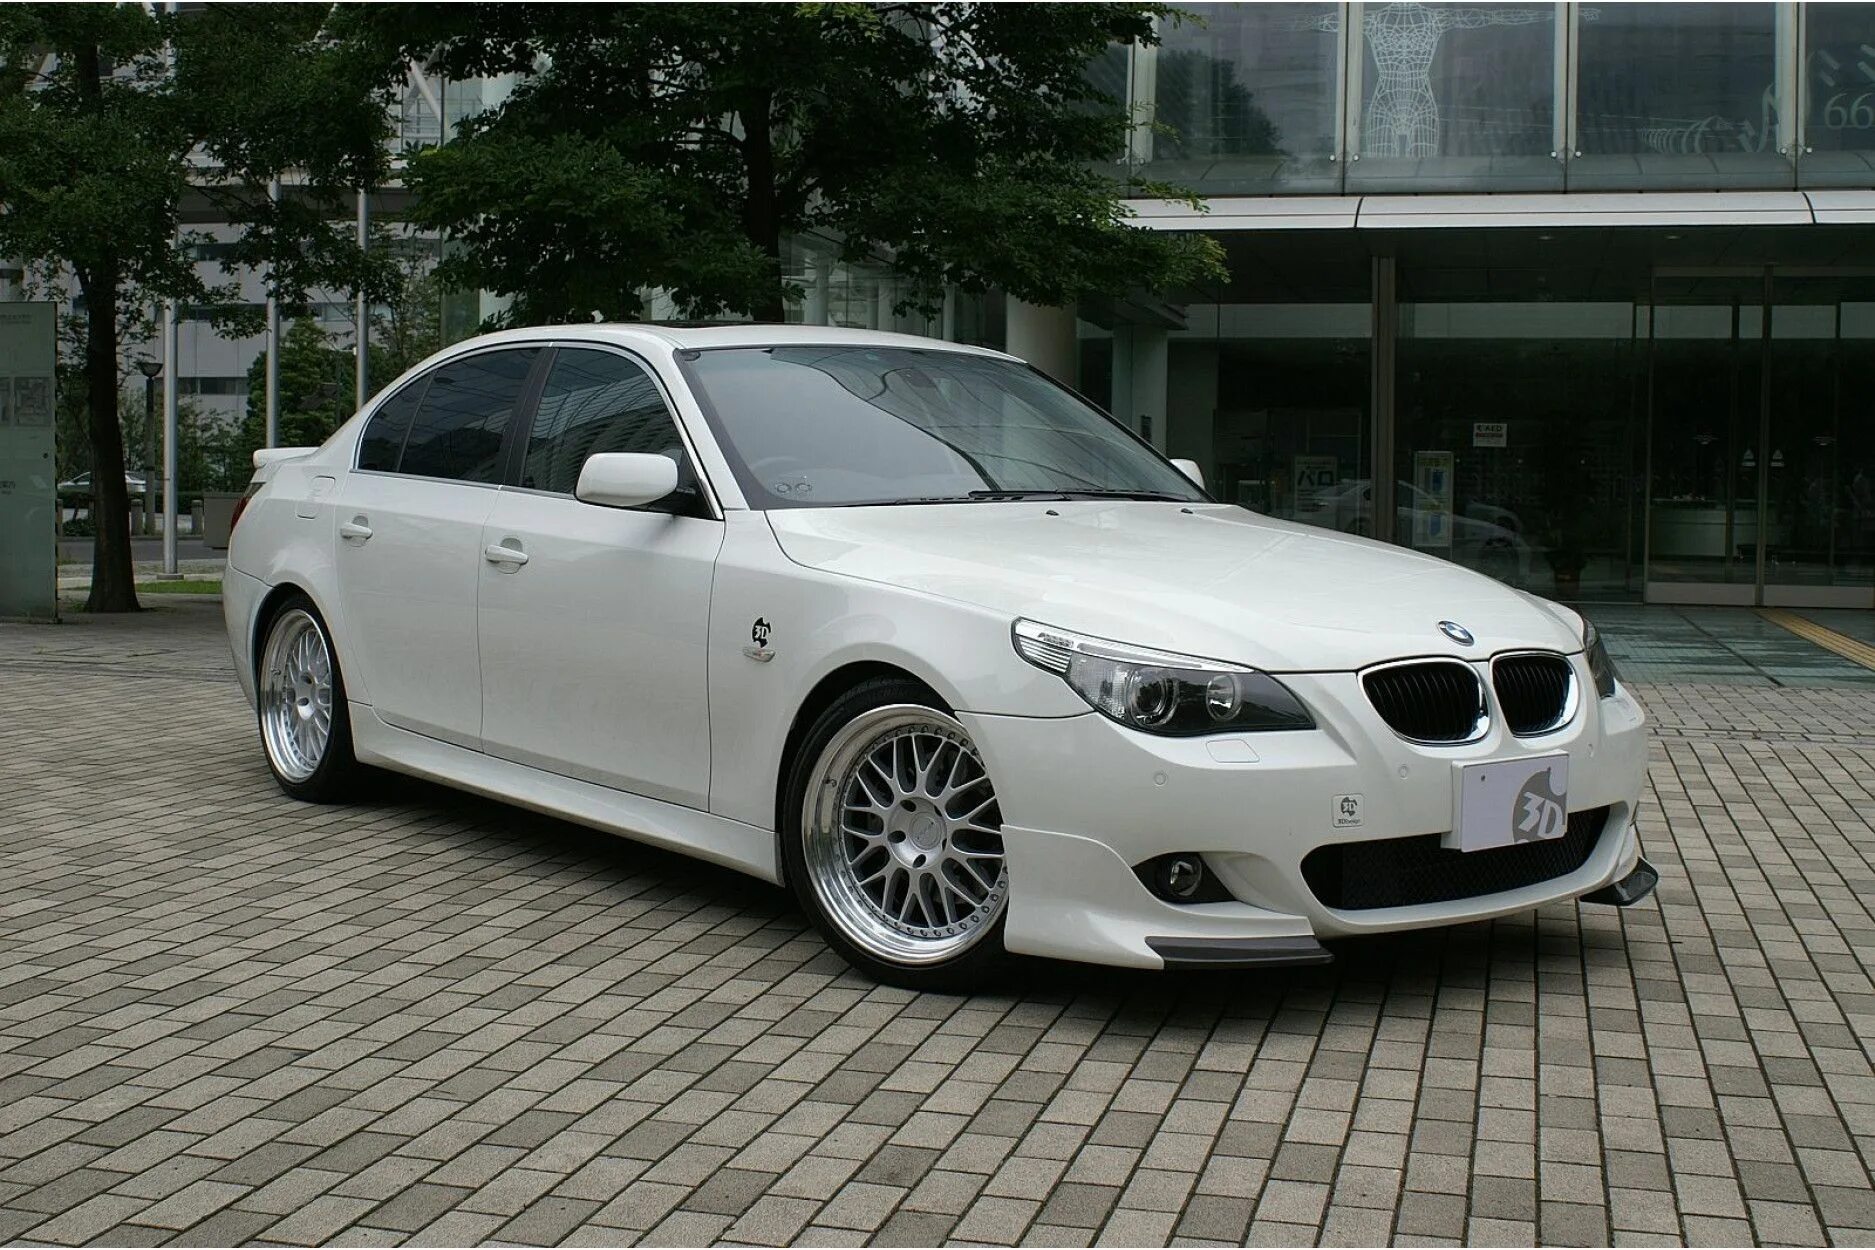 BMW 5 e60 2008. BMW 5 Series (e60). BMW m5 e60 2008. BMW 5 e60 2009.